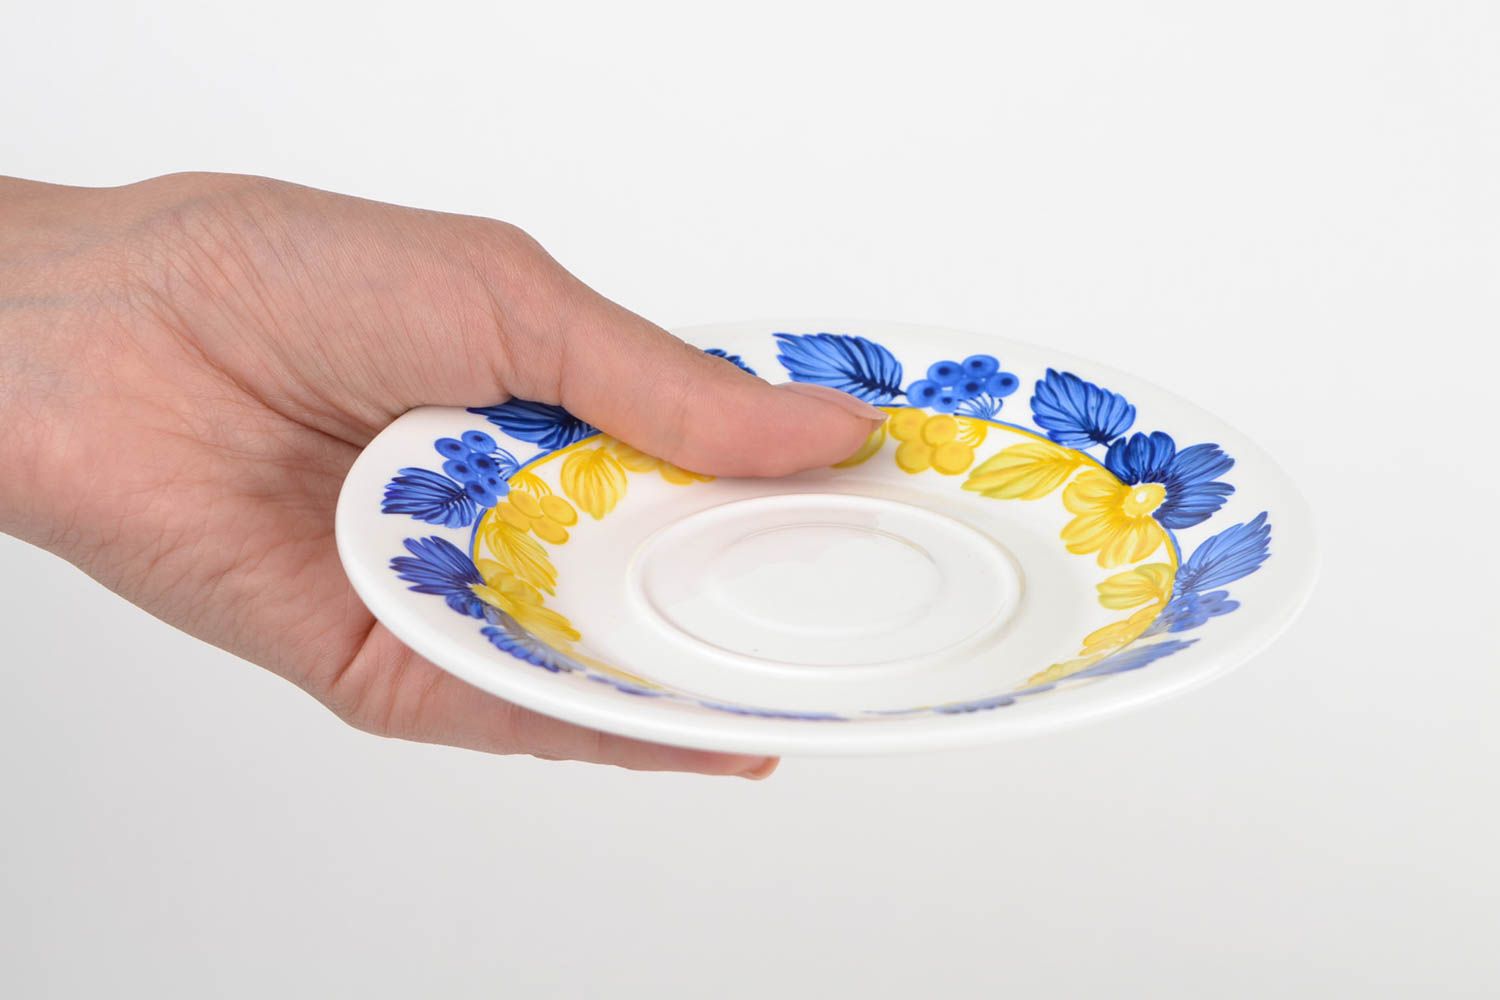 Soucoupe porcelaine fait main Petite assiette Service vaisselle ronde bleu jaune photo 2